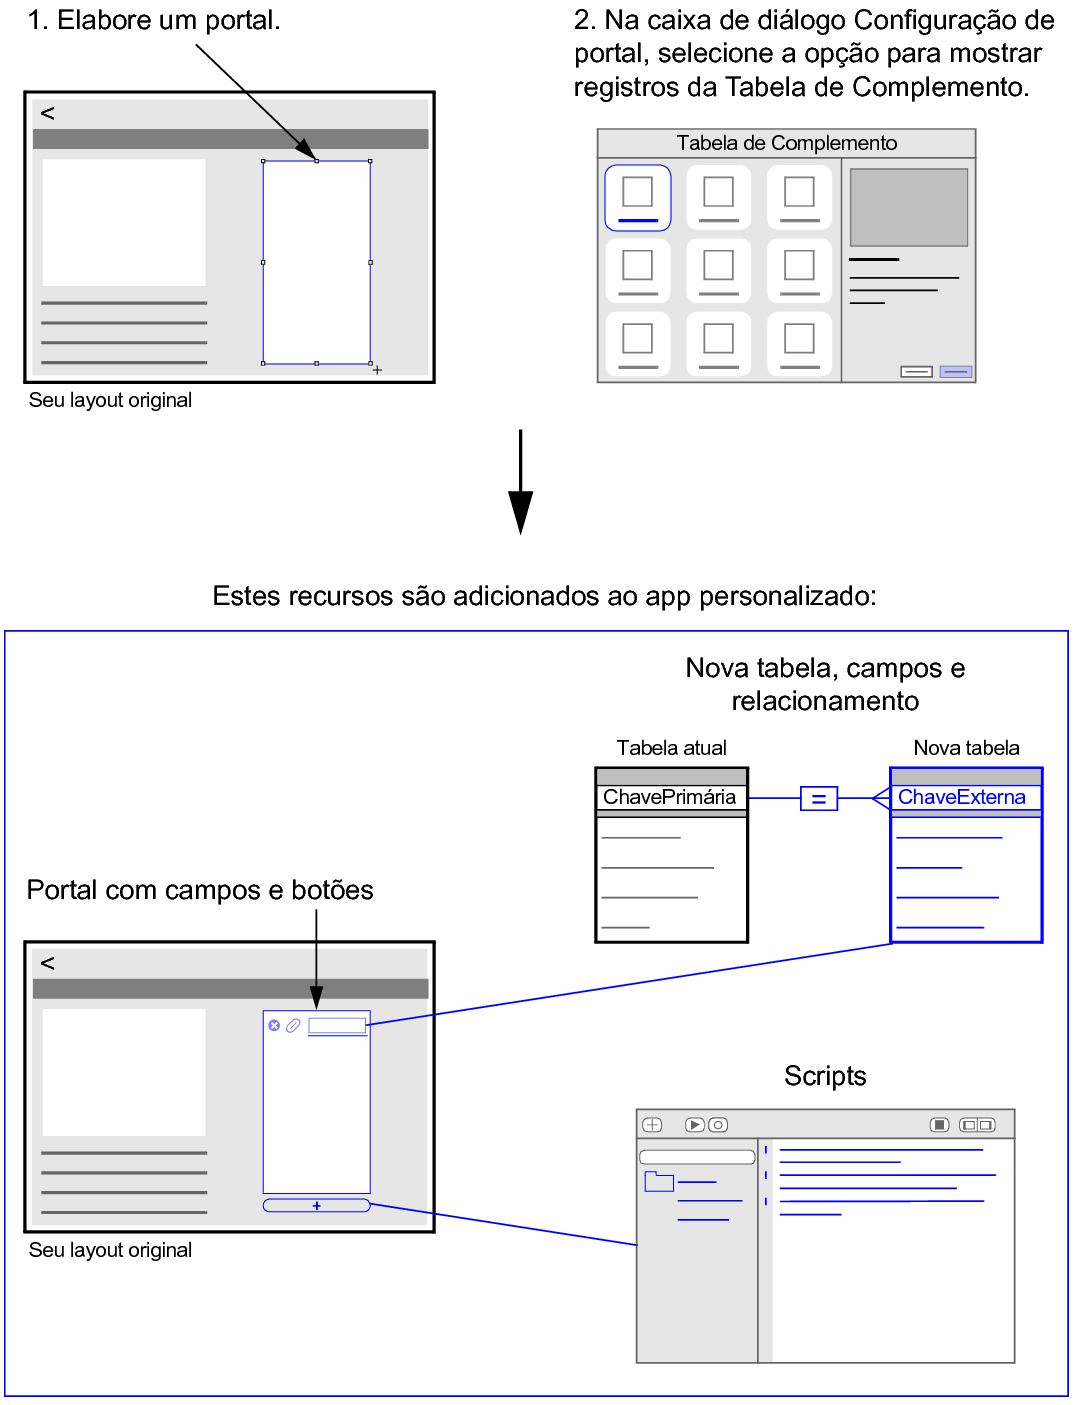 A elaboração de um portal e a escolha por mostrar registros de uma Tabela de Complemento adicionam um portal, uma tabela, os campos e os scripts ao app personalizado.